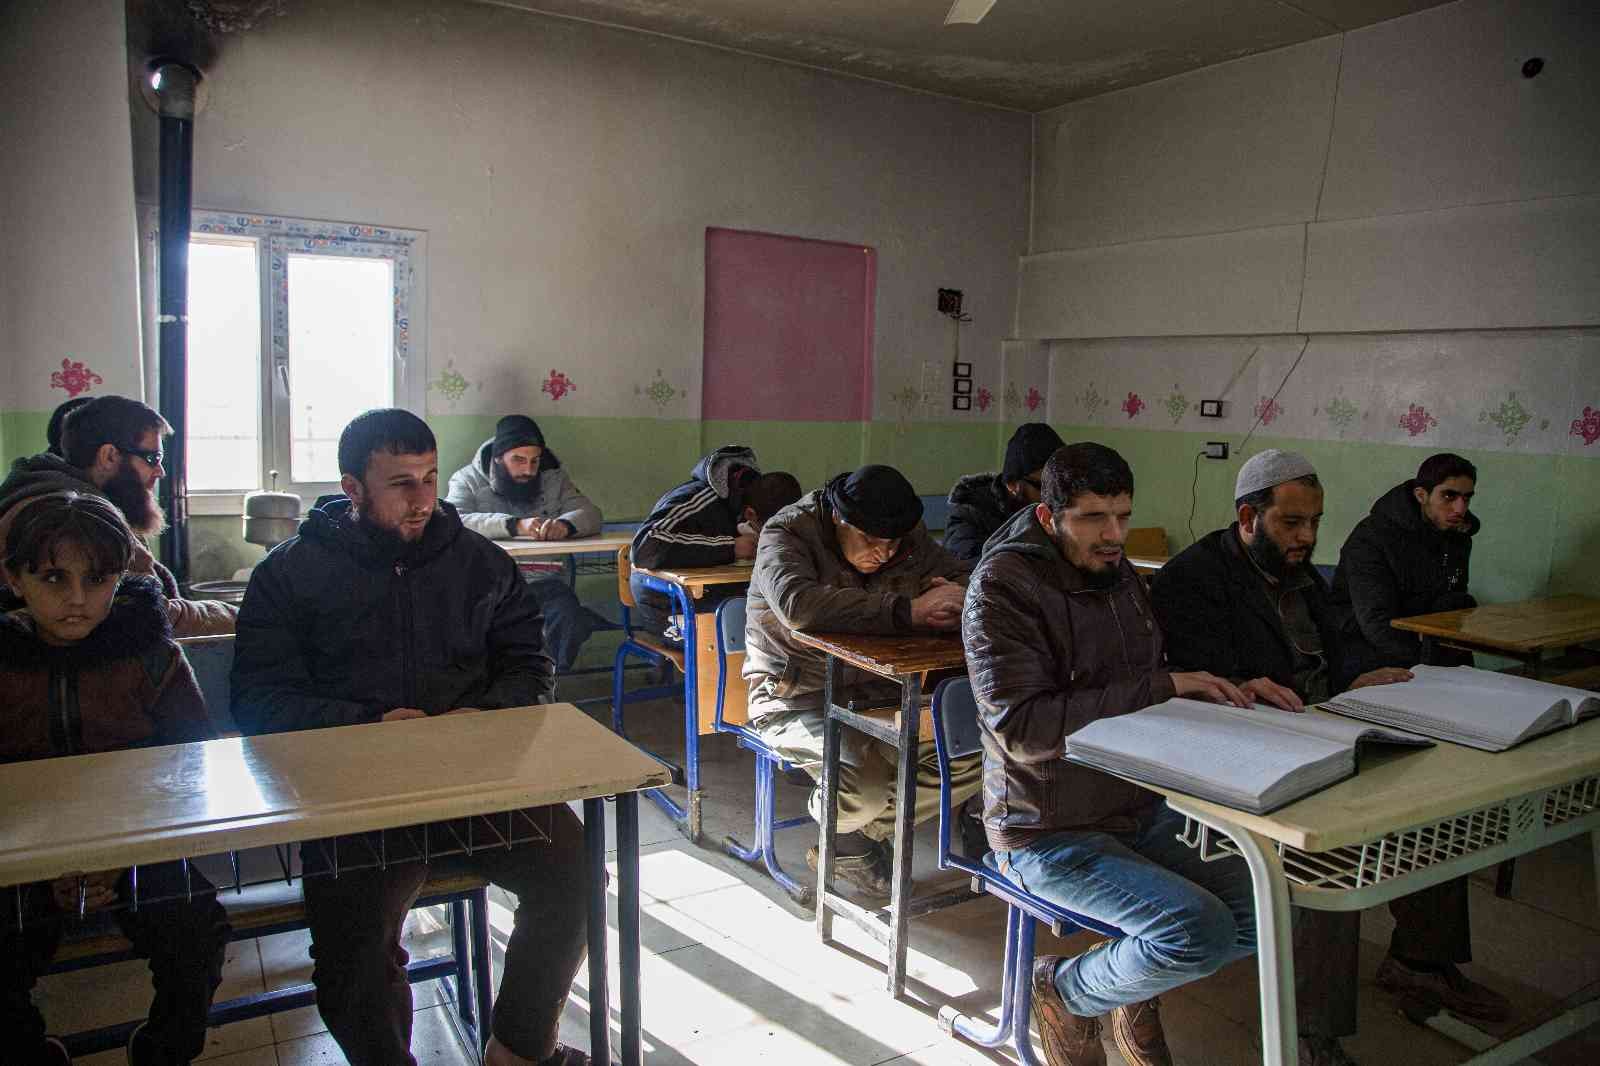 Suriye’deki savaşta gözlerini kaybeden siviller, aldıkları eğitimle yeniden okuyabiliyor